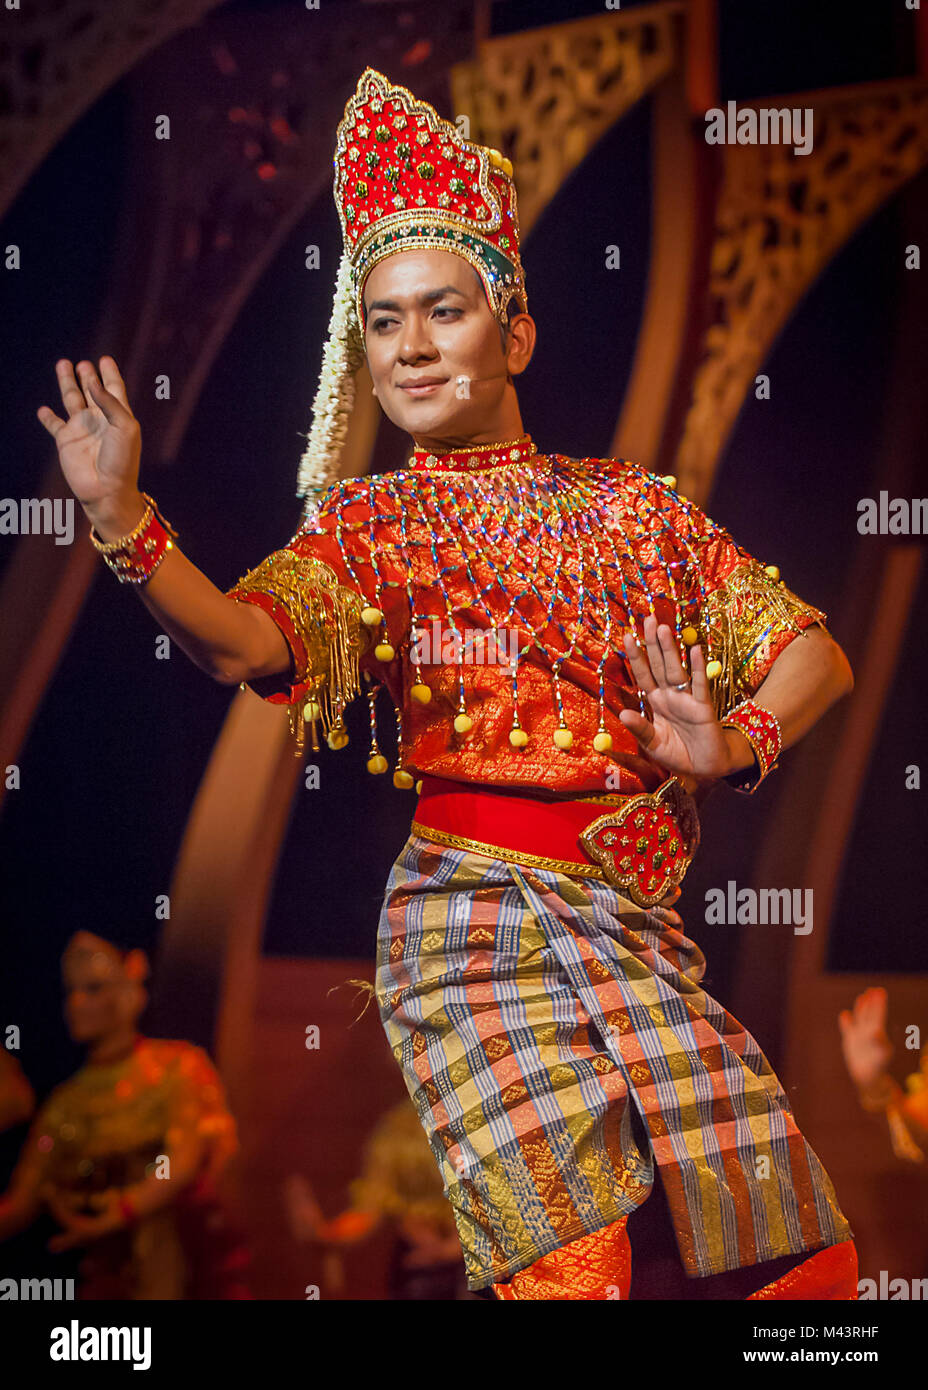 Mak-yung ist eine traditionelle Form des Tanzes - Drama aus dem Norden von Malaysia, Kelantan. Stockfoto